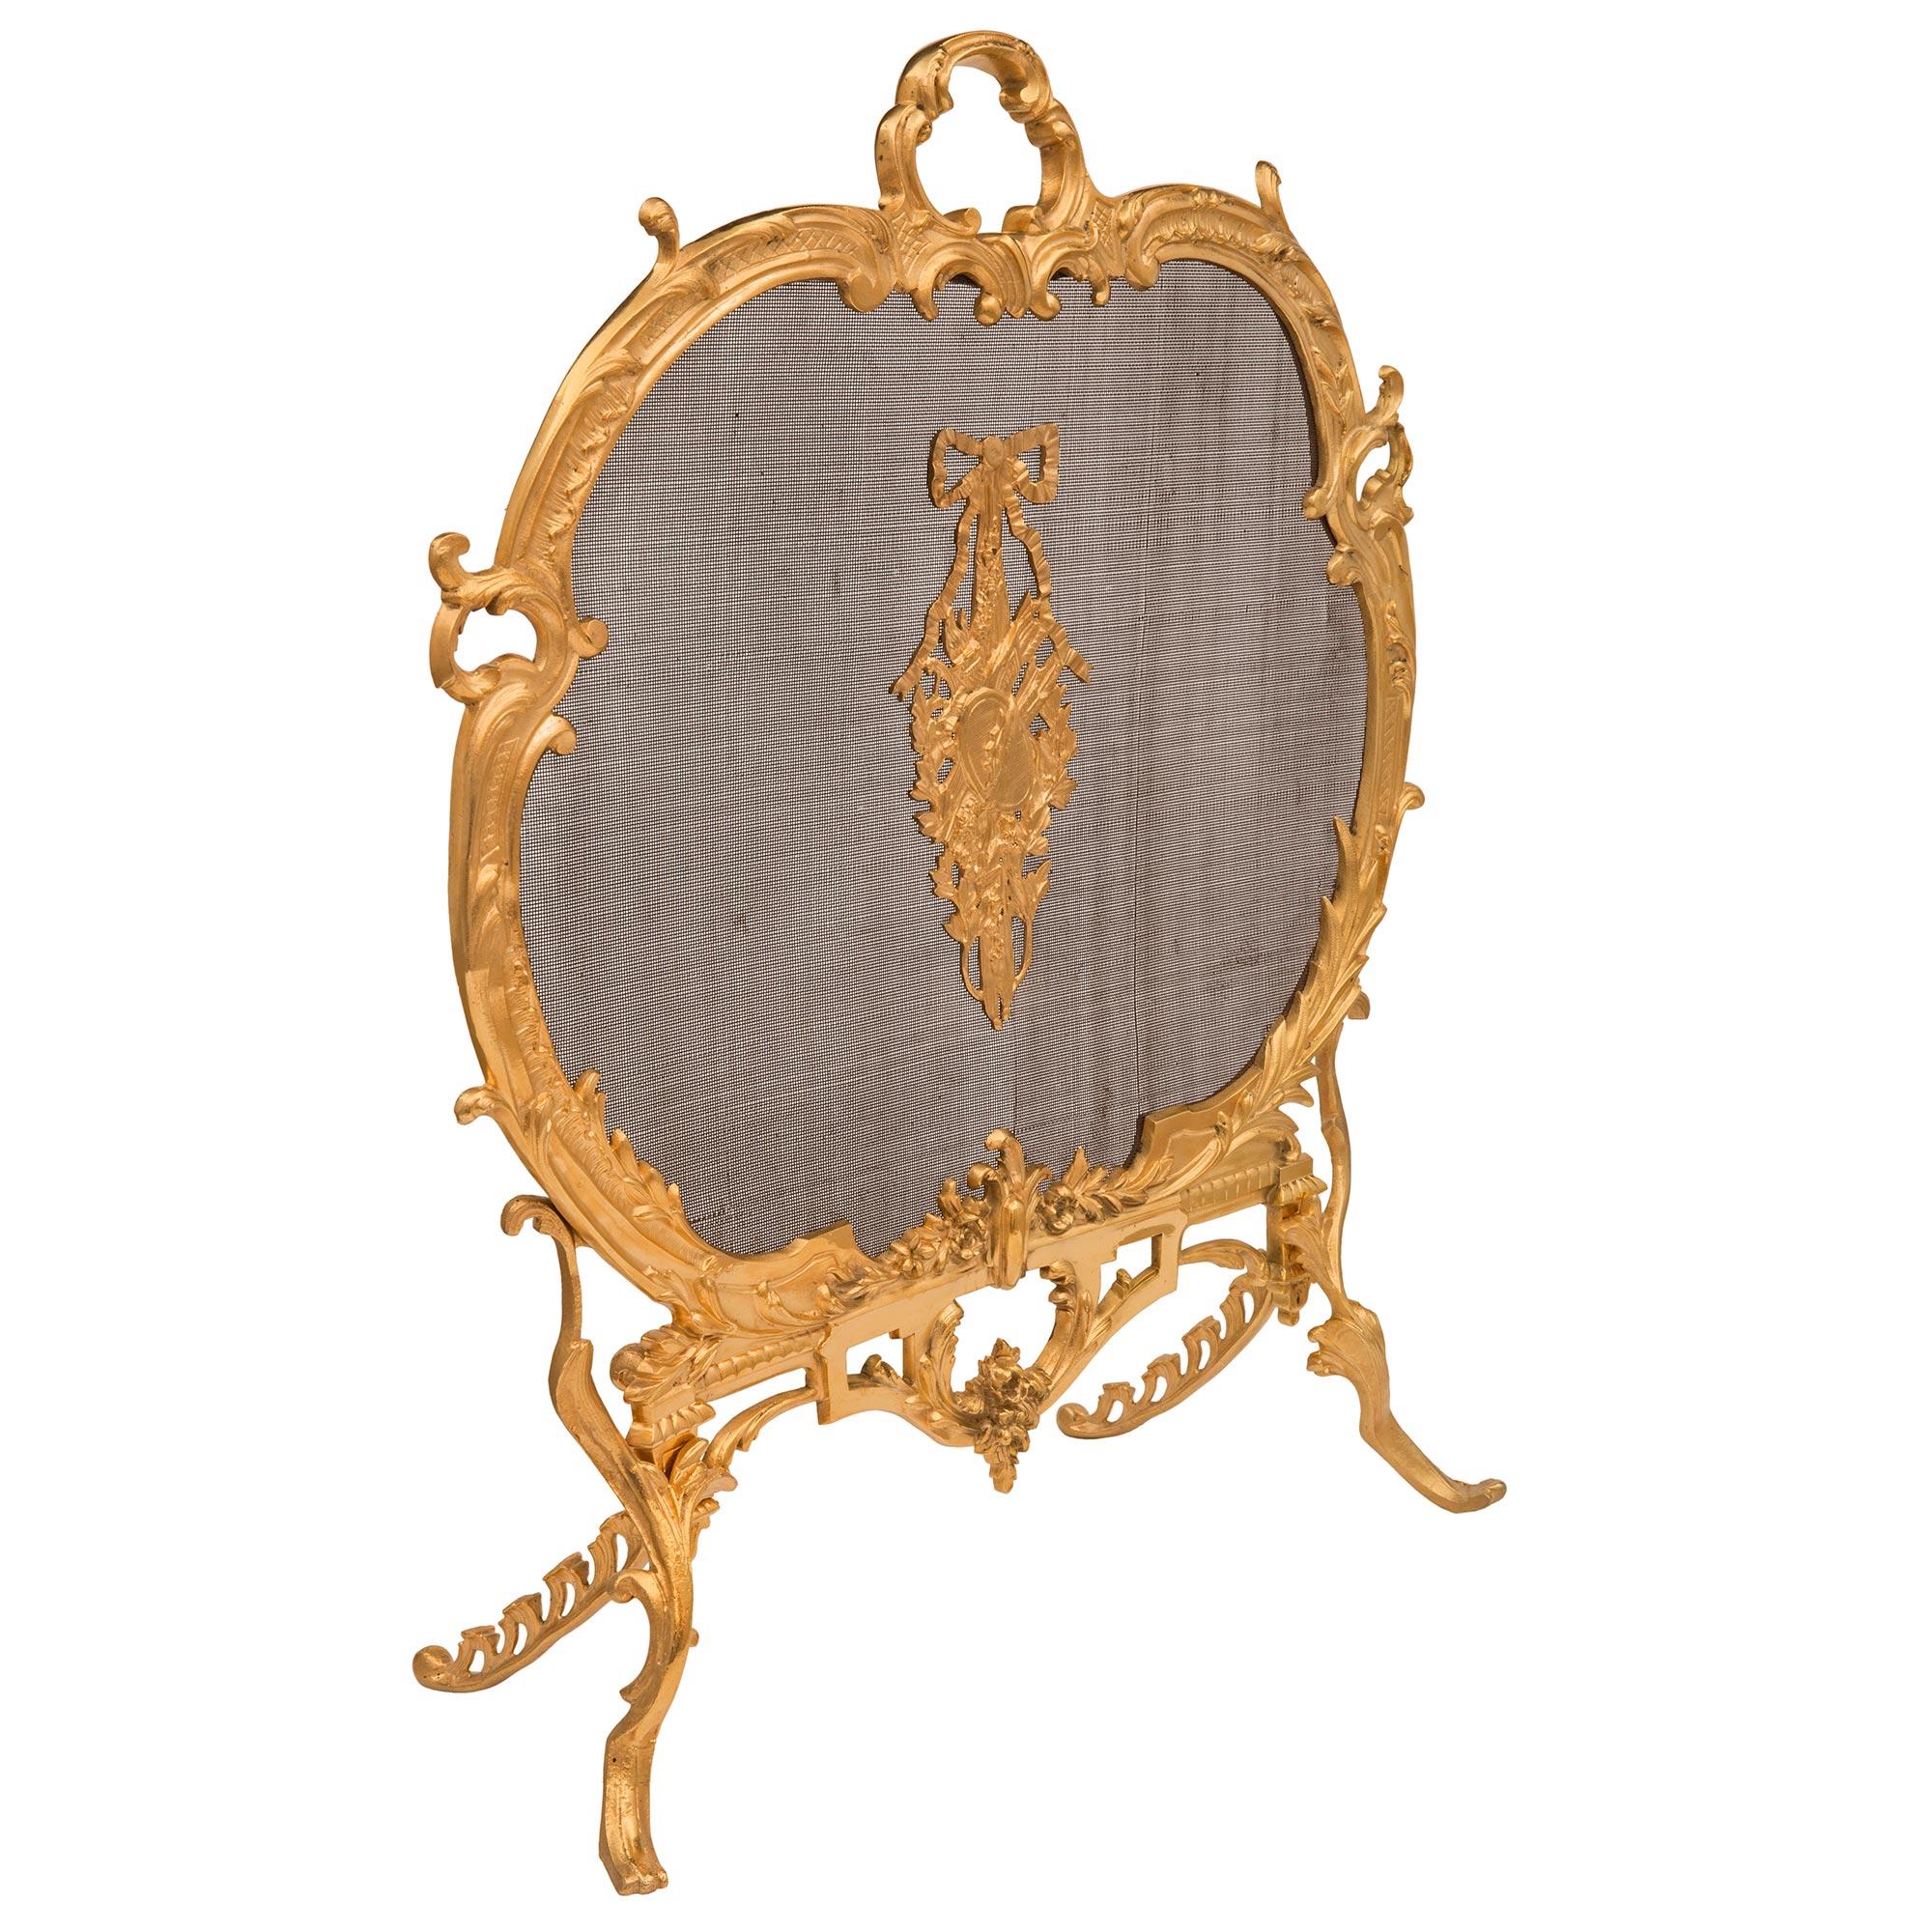 Ein auffälliger französischer Kaminschirm aus dem 19. Jahrhundert aus Louis XV-St. Ormolu und Netz. Der Kaminschirm wird von schönen, verschlungenen, foliierten Beinen in Form von Akanthusblättern getragen, die scheinbar nach oben wachsen und eine